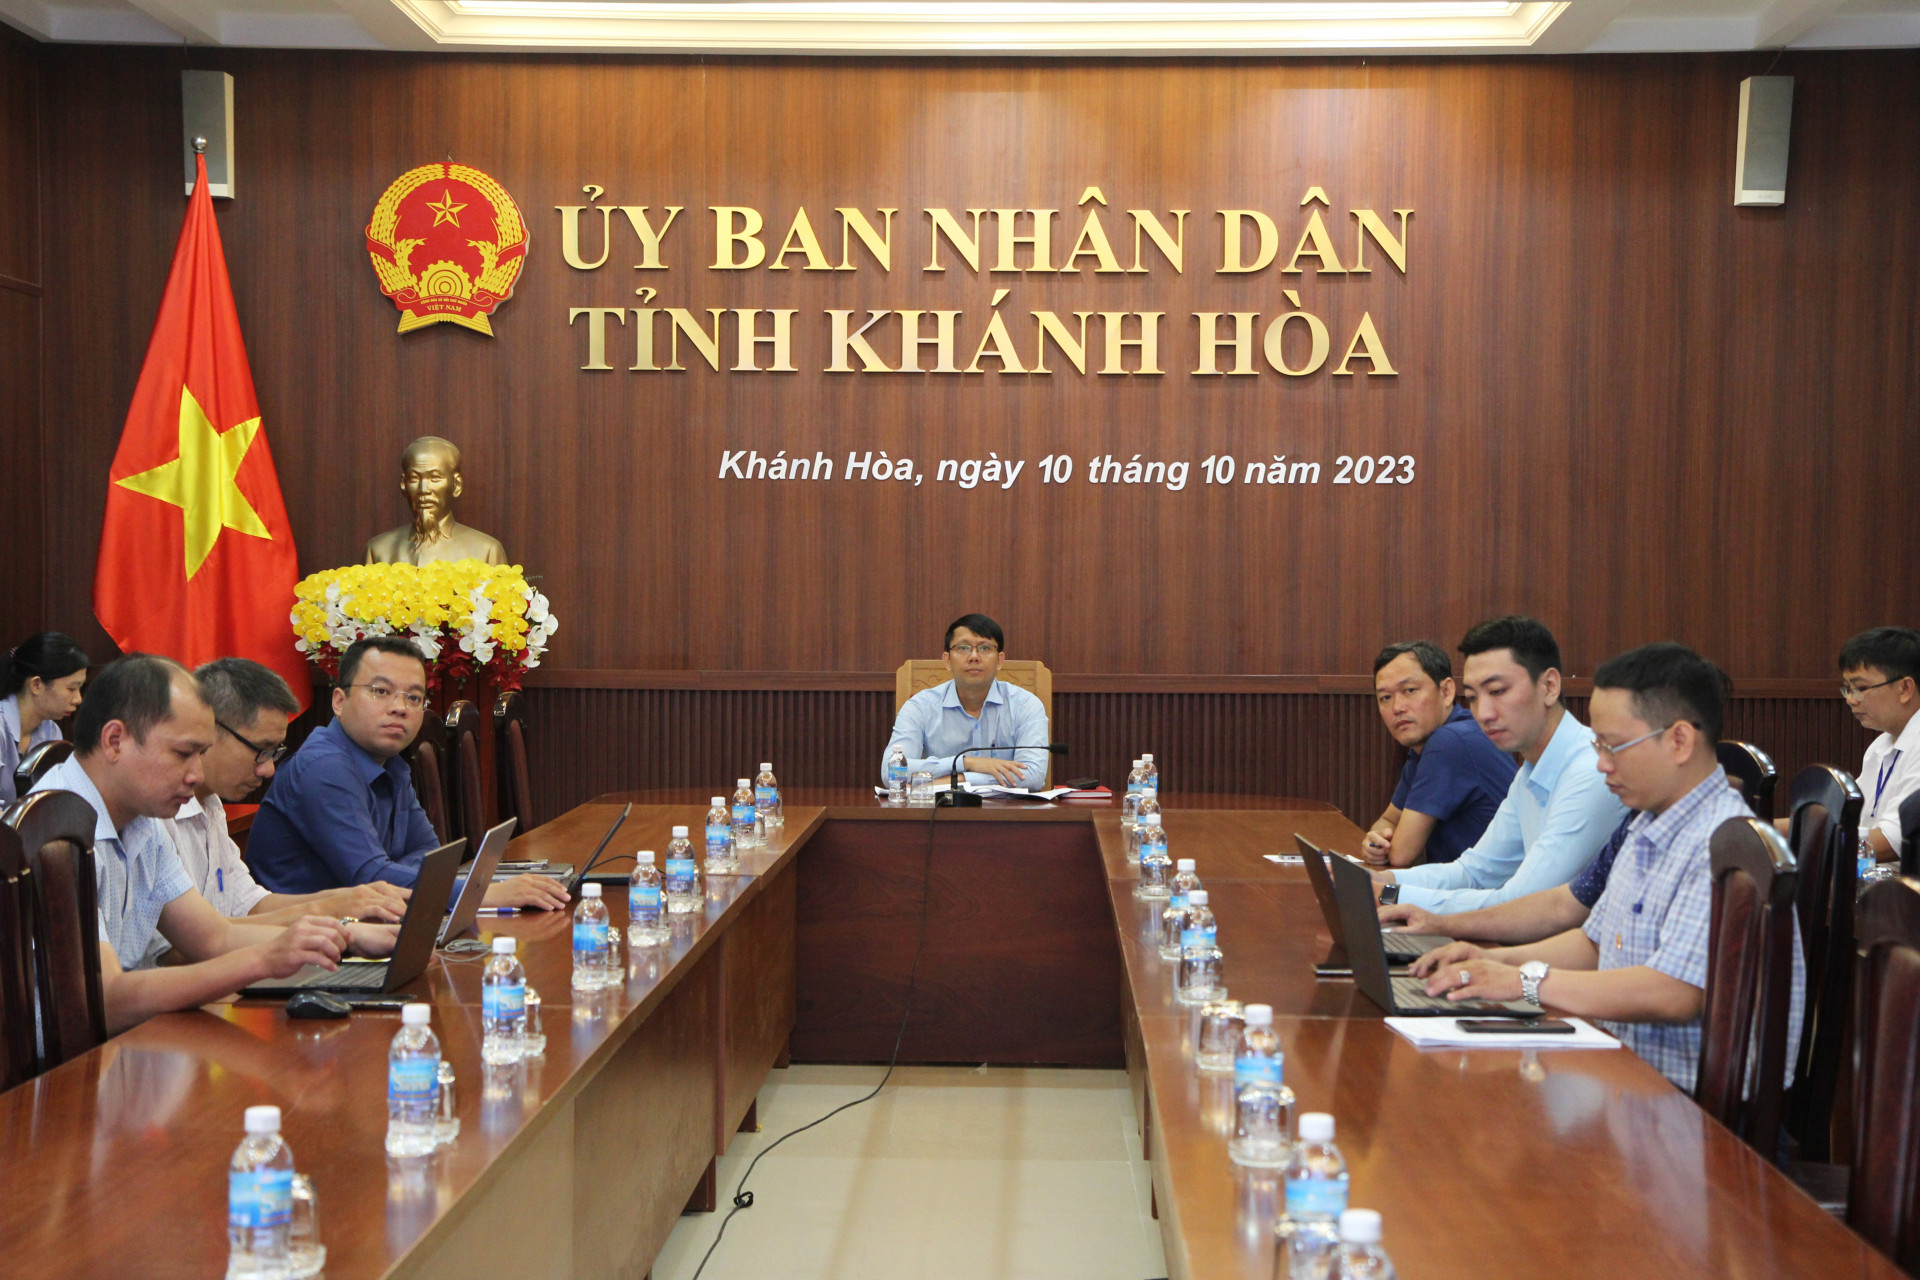 Quang cảnh hội nghị tại điểm cầu UBND tỉnh Khánh Hòa.